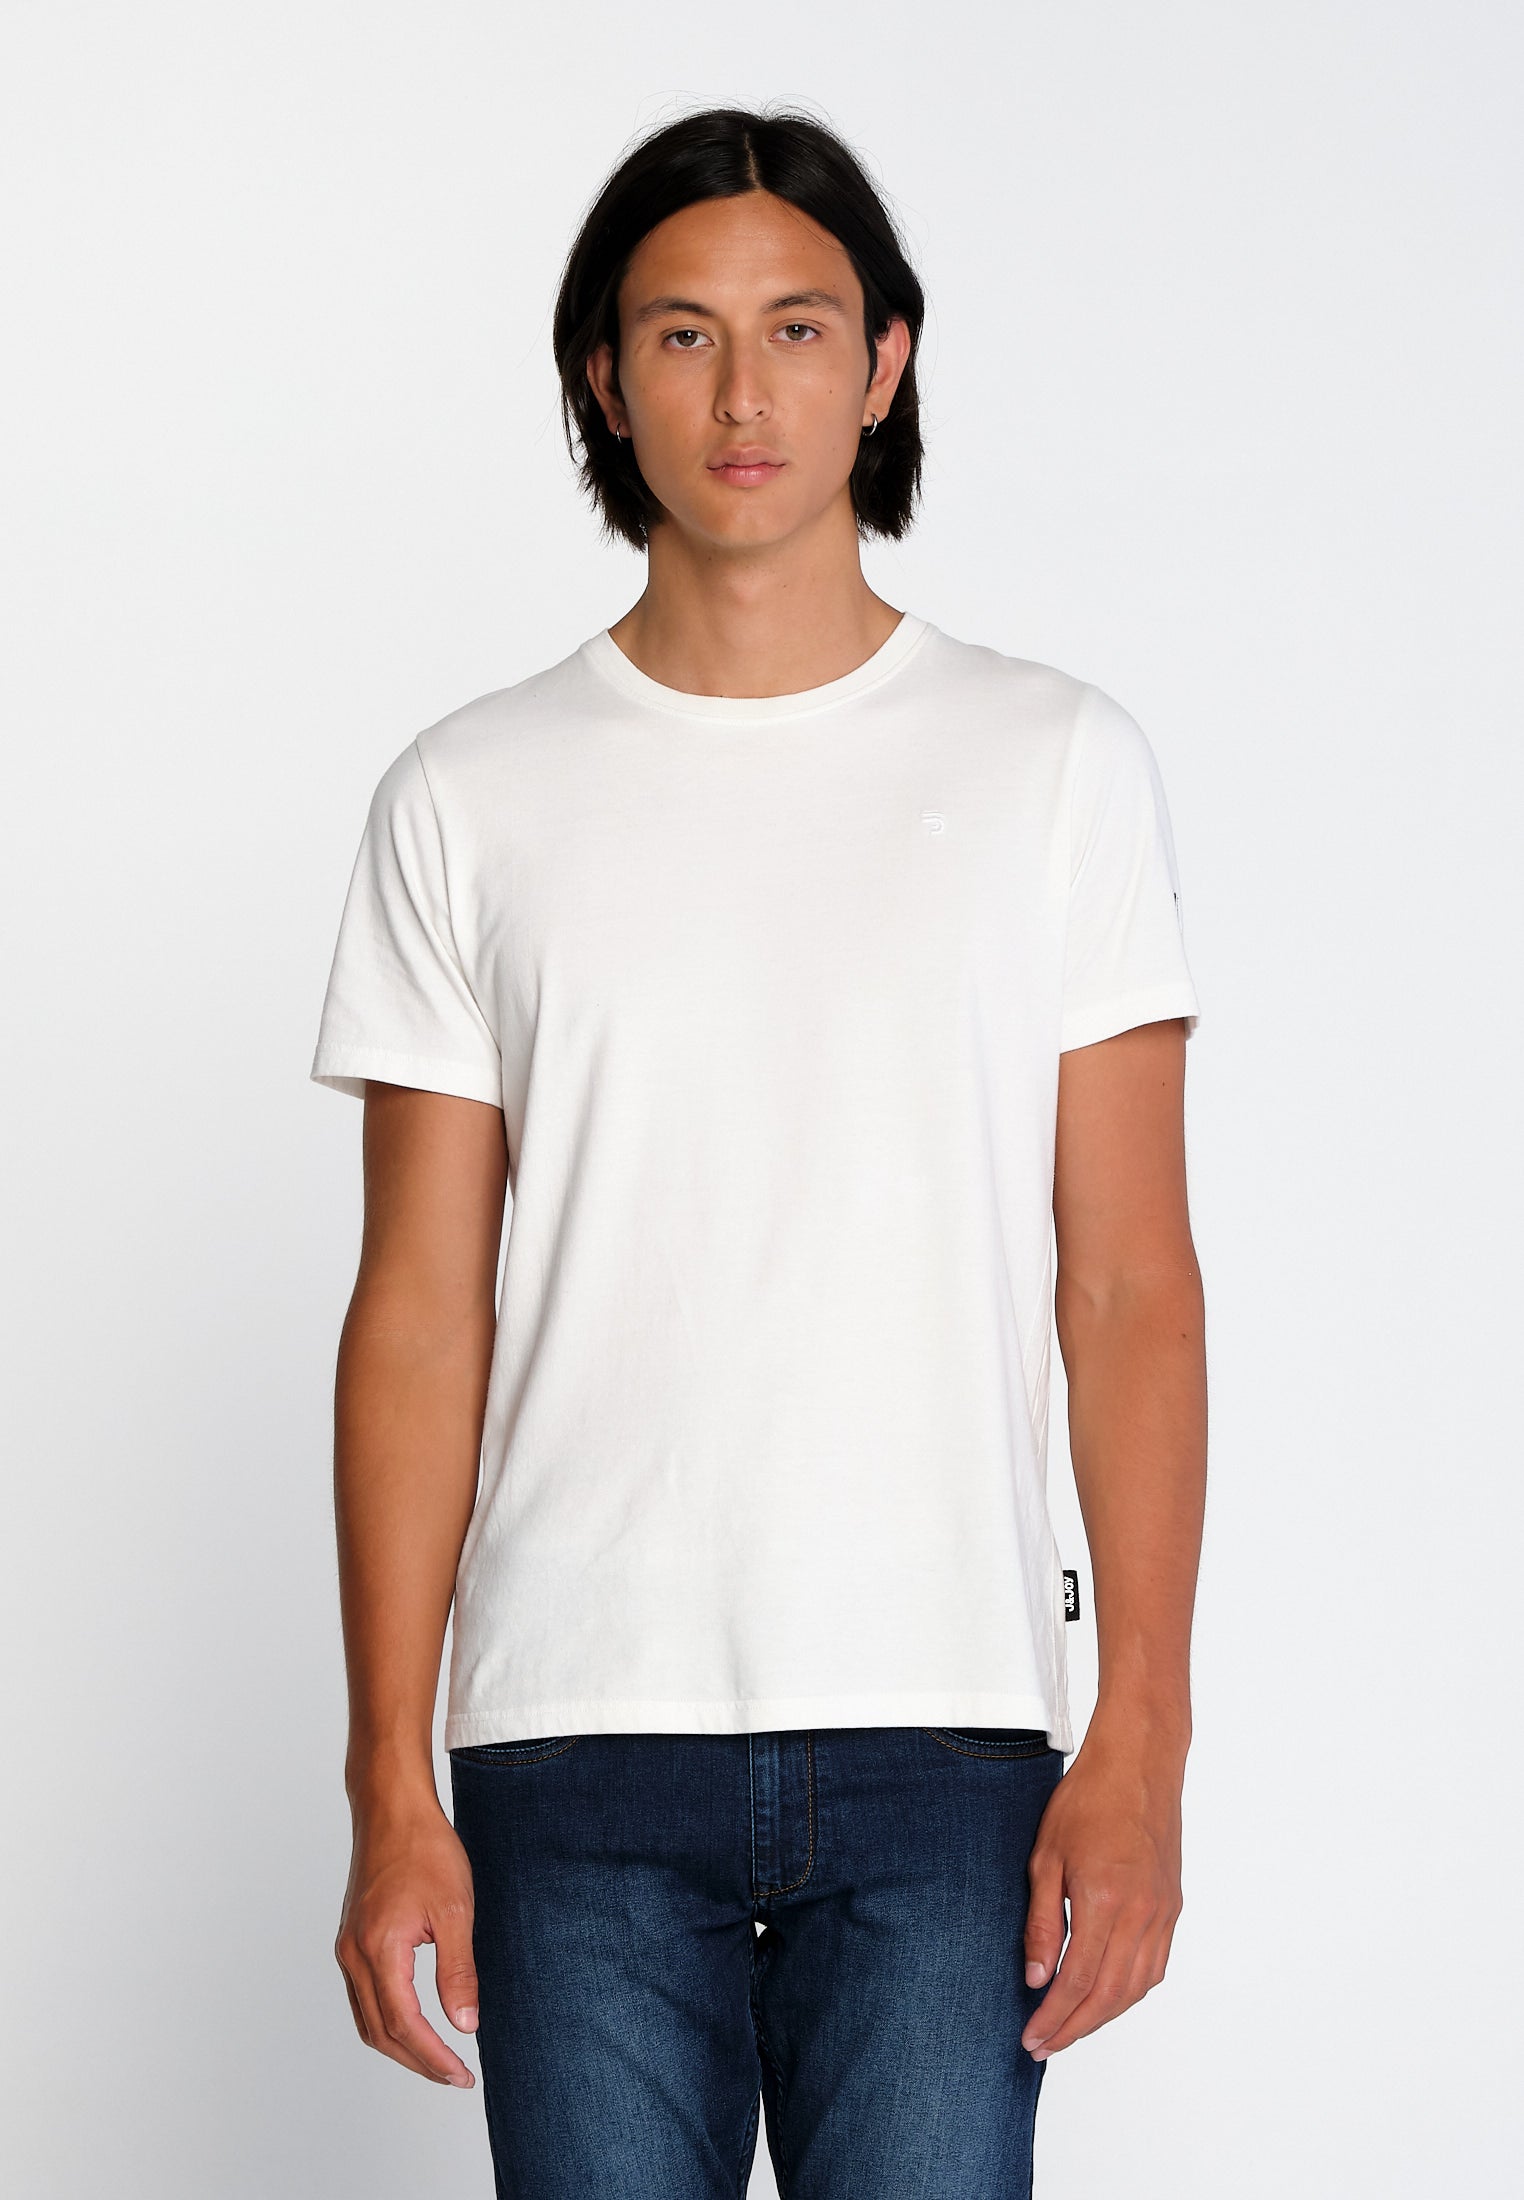 T-Shirt Homme Essentials 06 White | J&JOY.